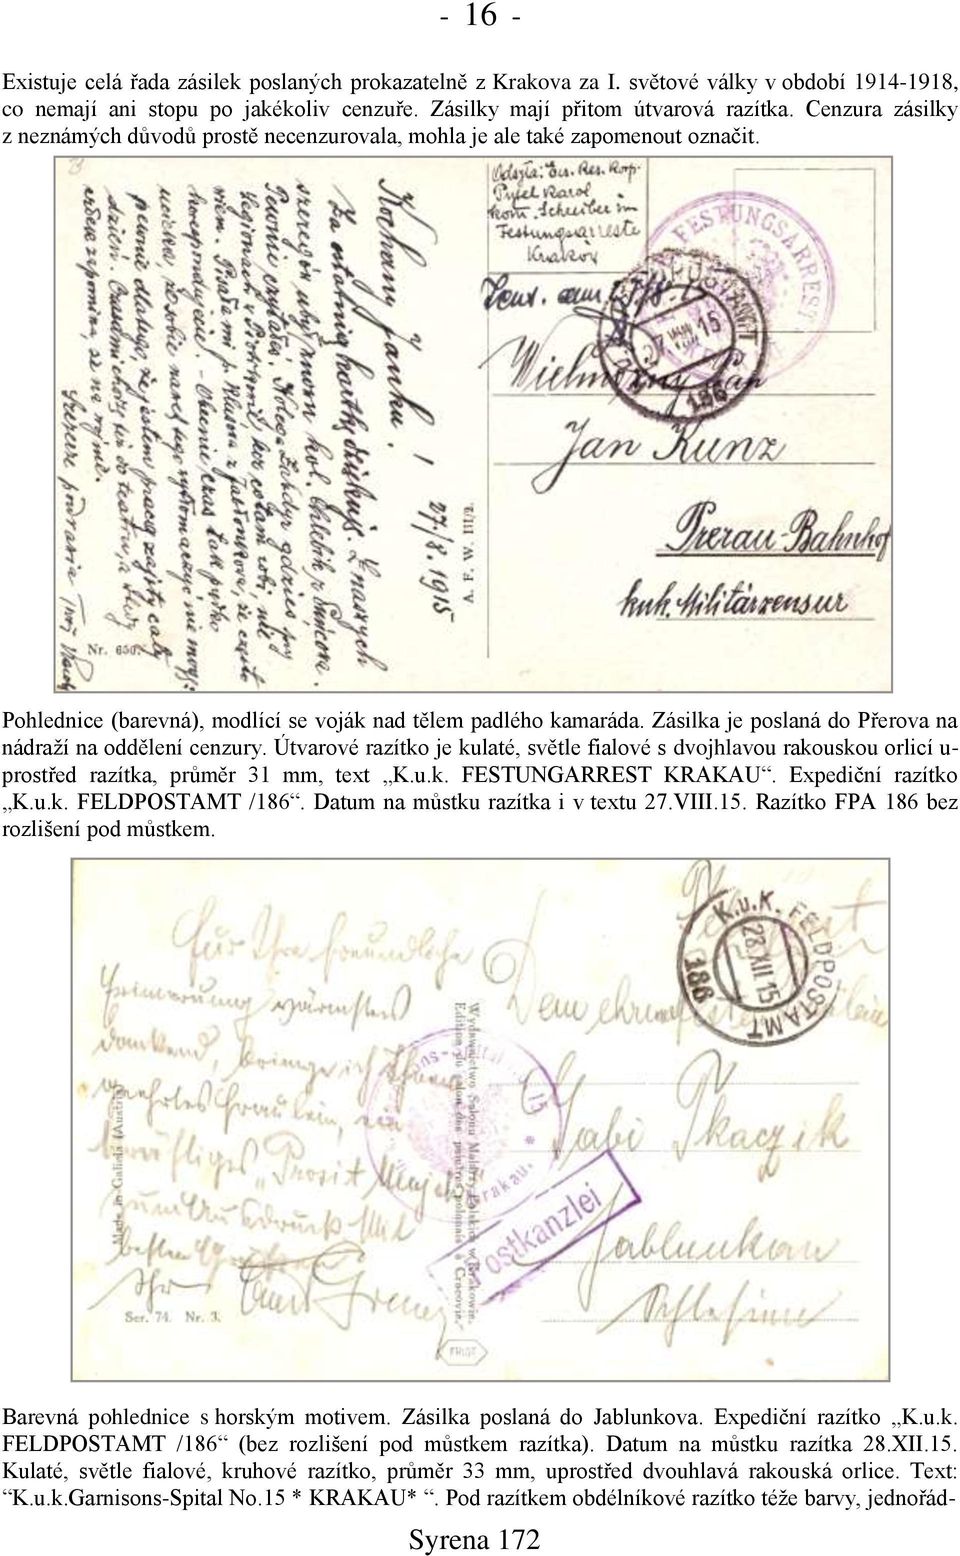 Zásilka je poslaná do Přerova na nádraņí na oddělení cenzury. Útvarové razítko je kulaté, světle fialové s dvojhlavou rakouskou orlicí u- prostřed razítka, průměr 31 mm, text K.u.k. FESTUNGARREST KRAKAU.